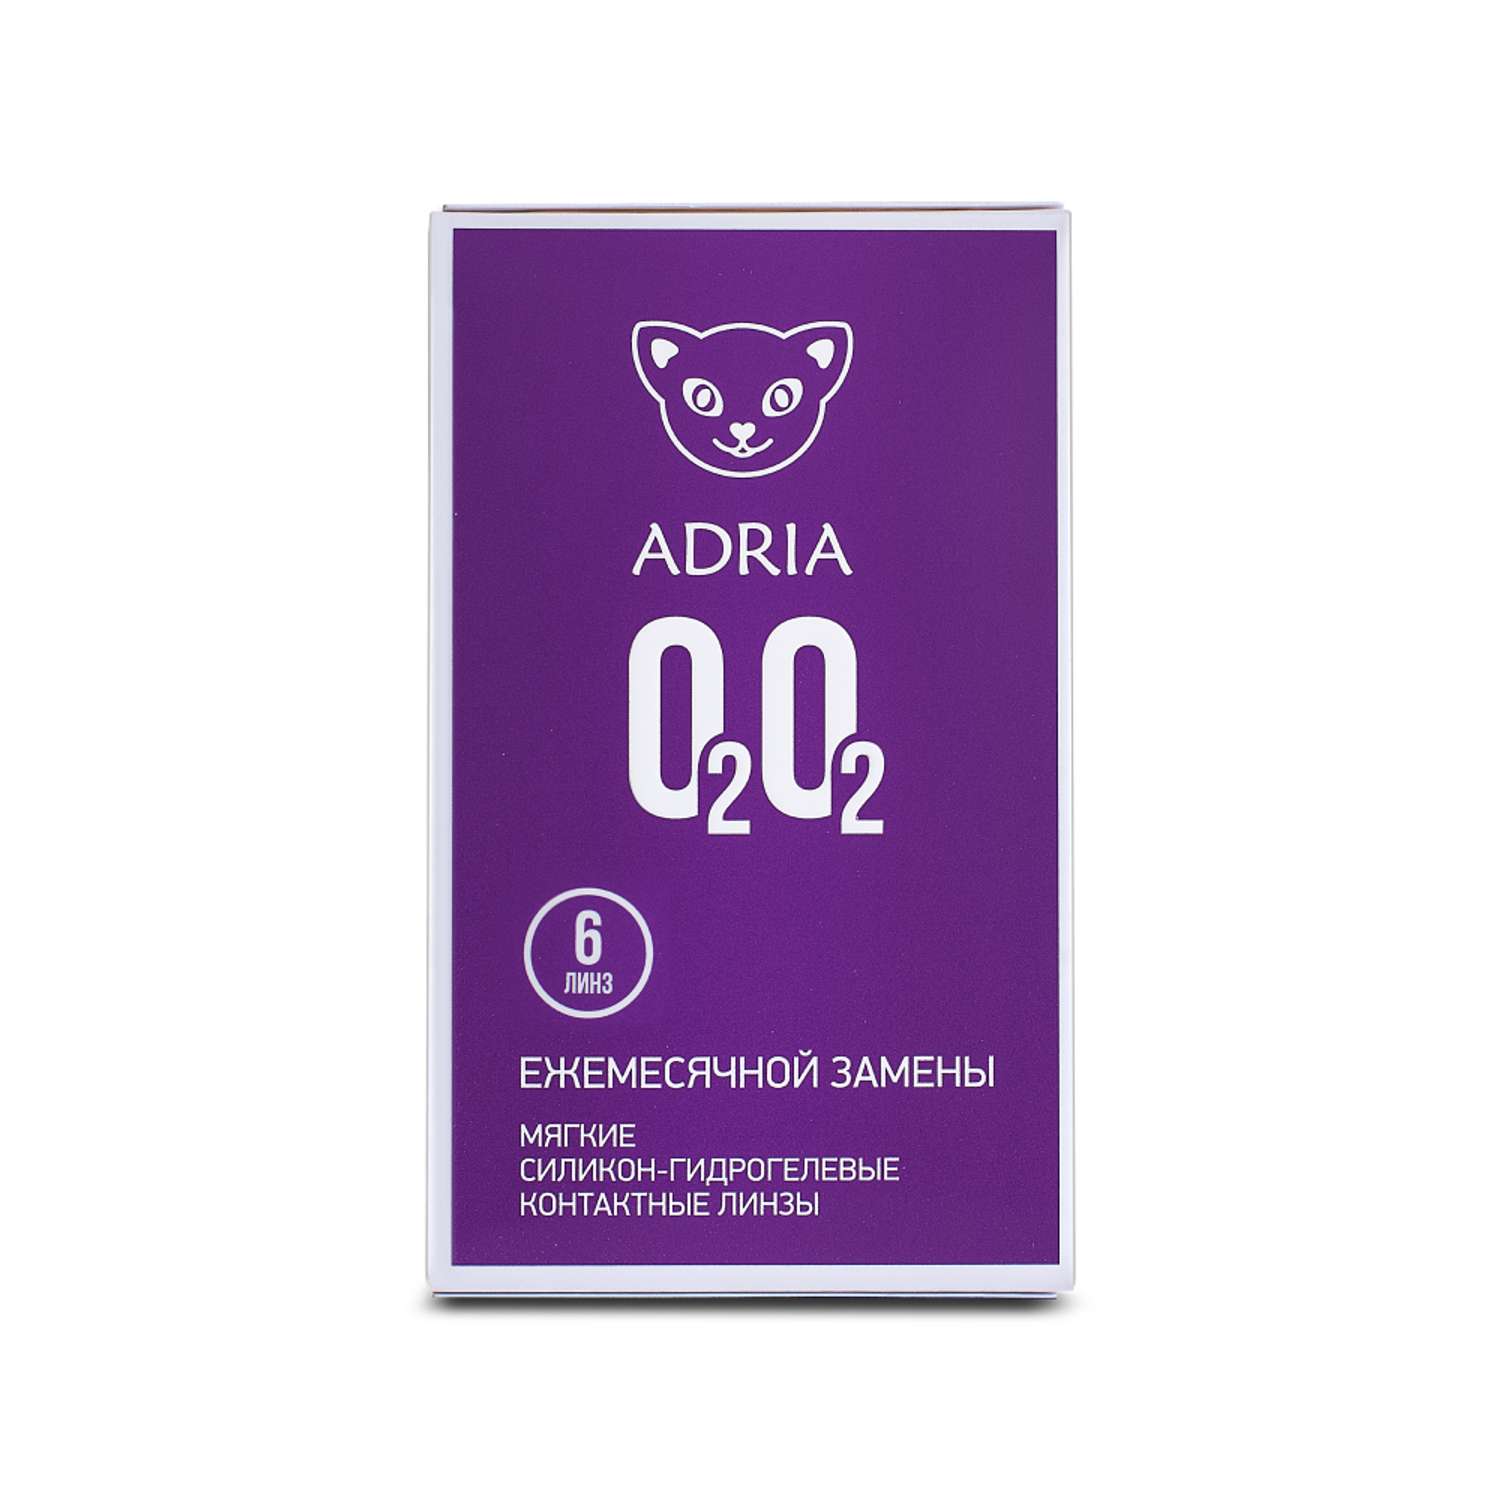 Контактные линзы ADRIA O2O2 6 линз R 8.6 -3.00 - фото 6